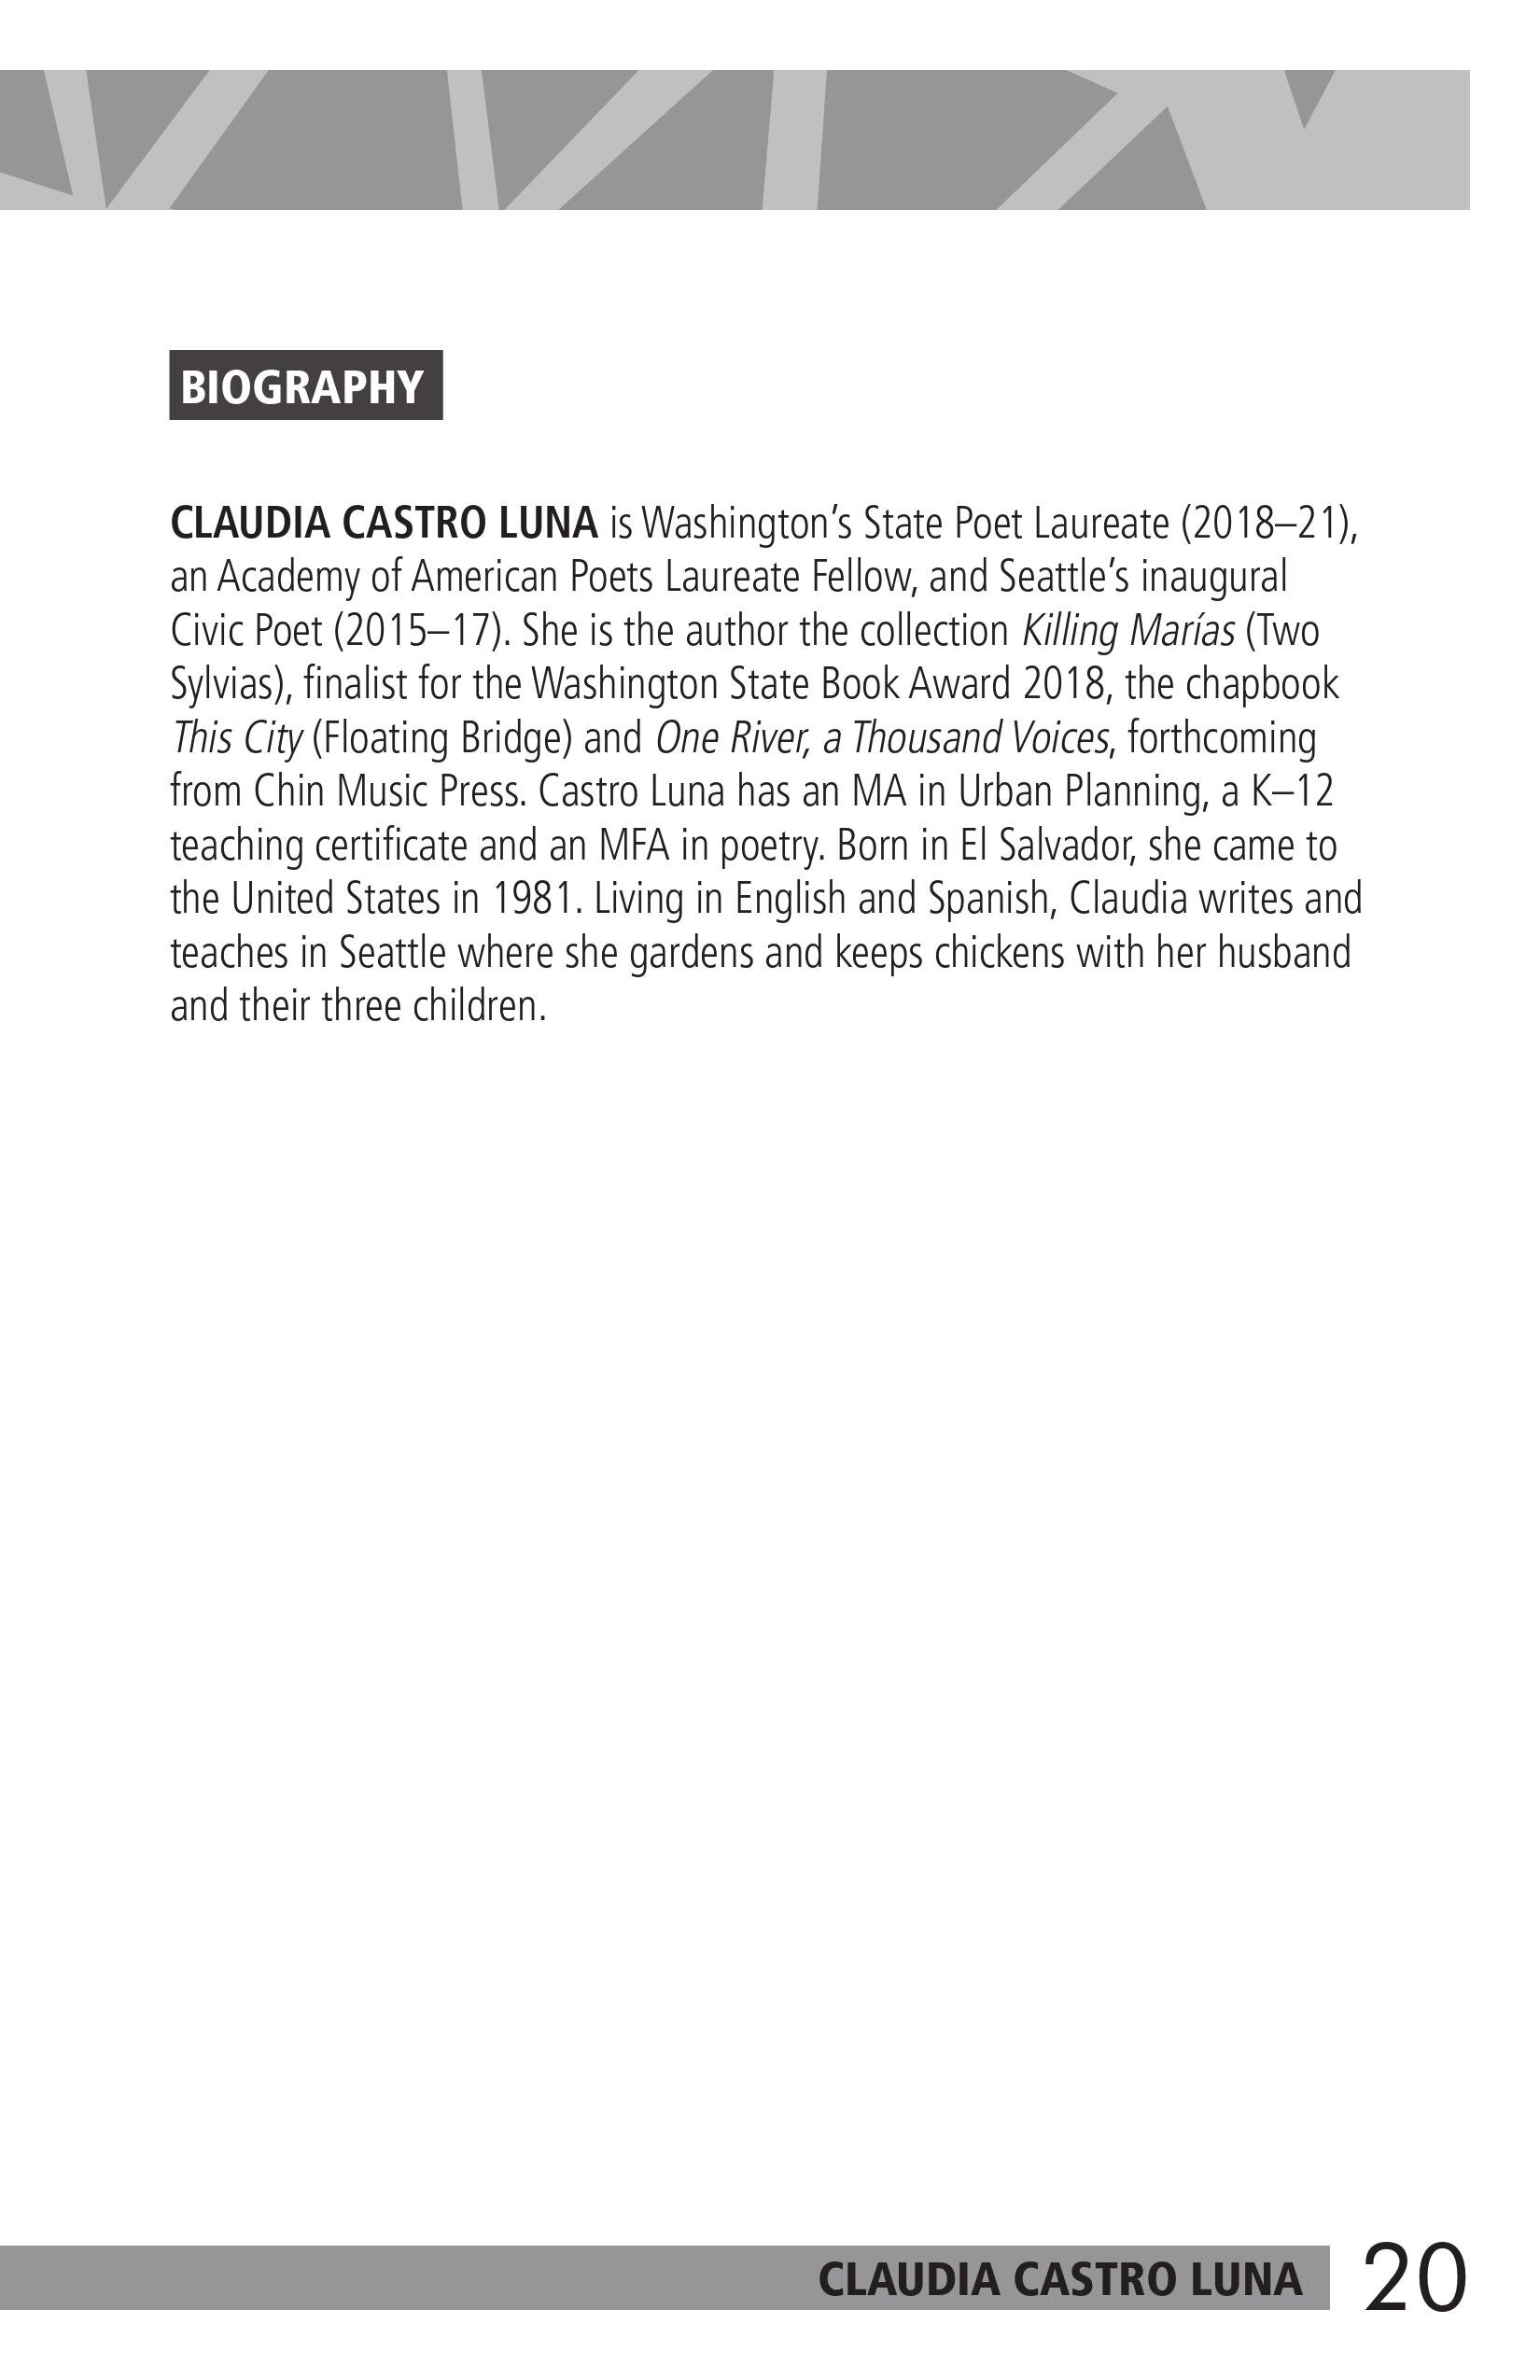 Claudia Castro Luna Page 20.jpg